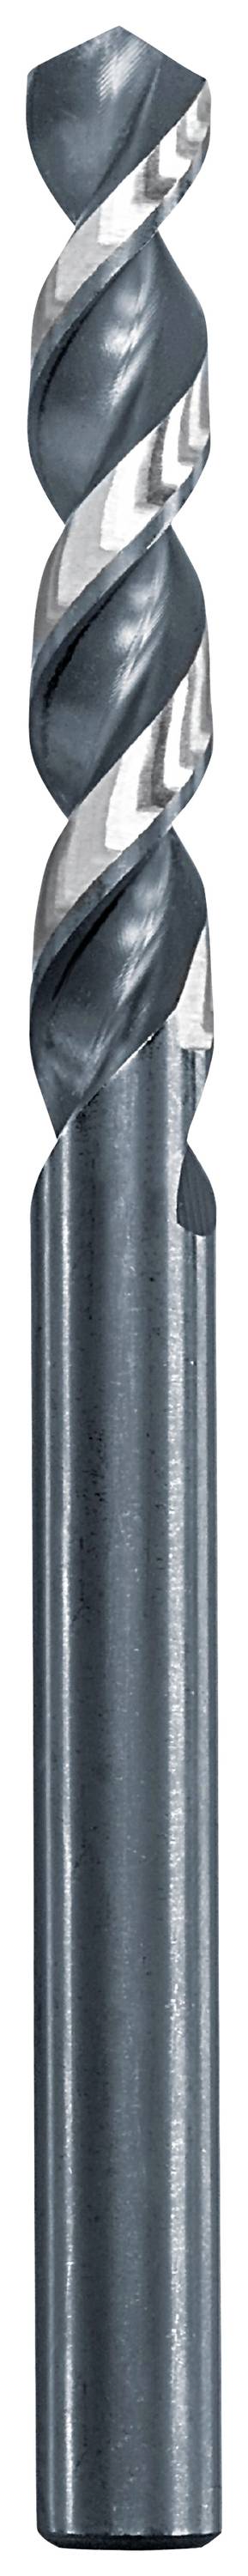 KWB 258642 Metall-Spiralbohrer 4.2 mm Gesamtlänge 75 mm 1 St.